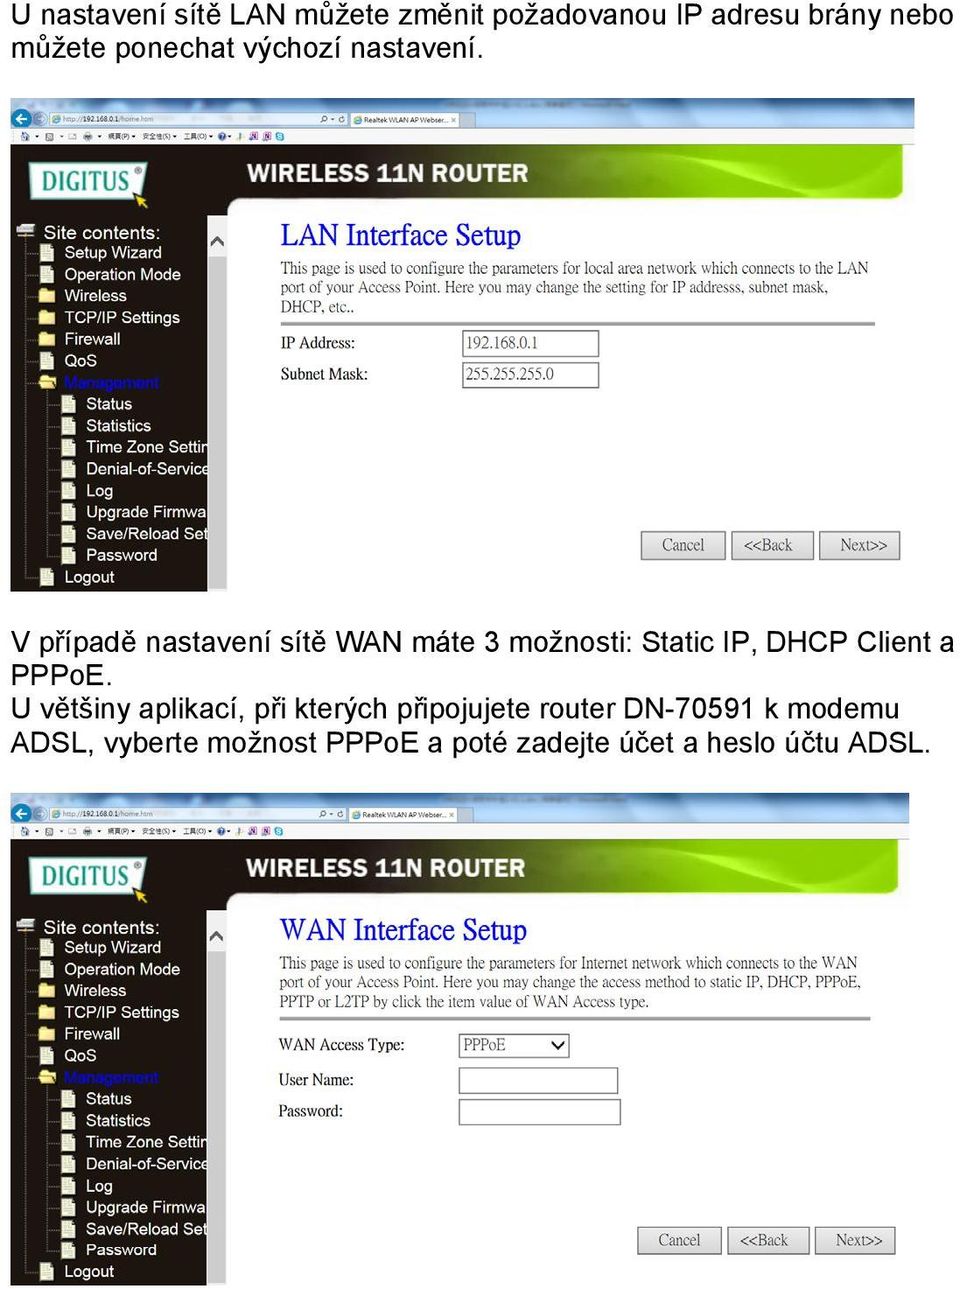 V případě nastavení sítě WAN máte 3 možnosti: Static IP, DHCP Client a PPPoE.